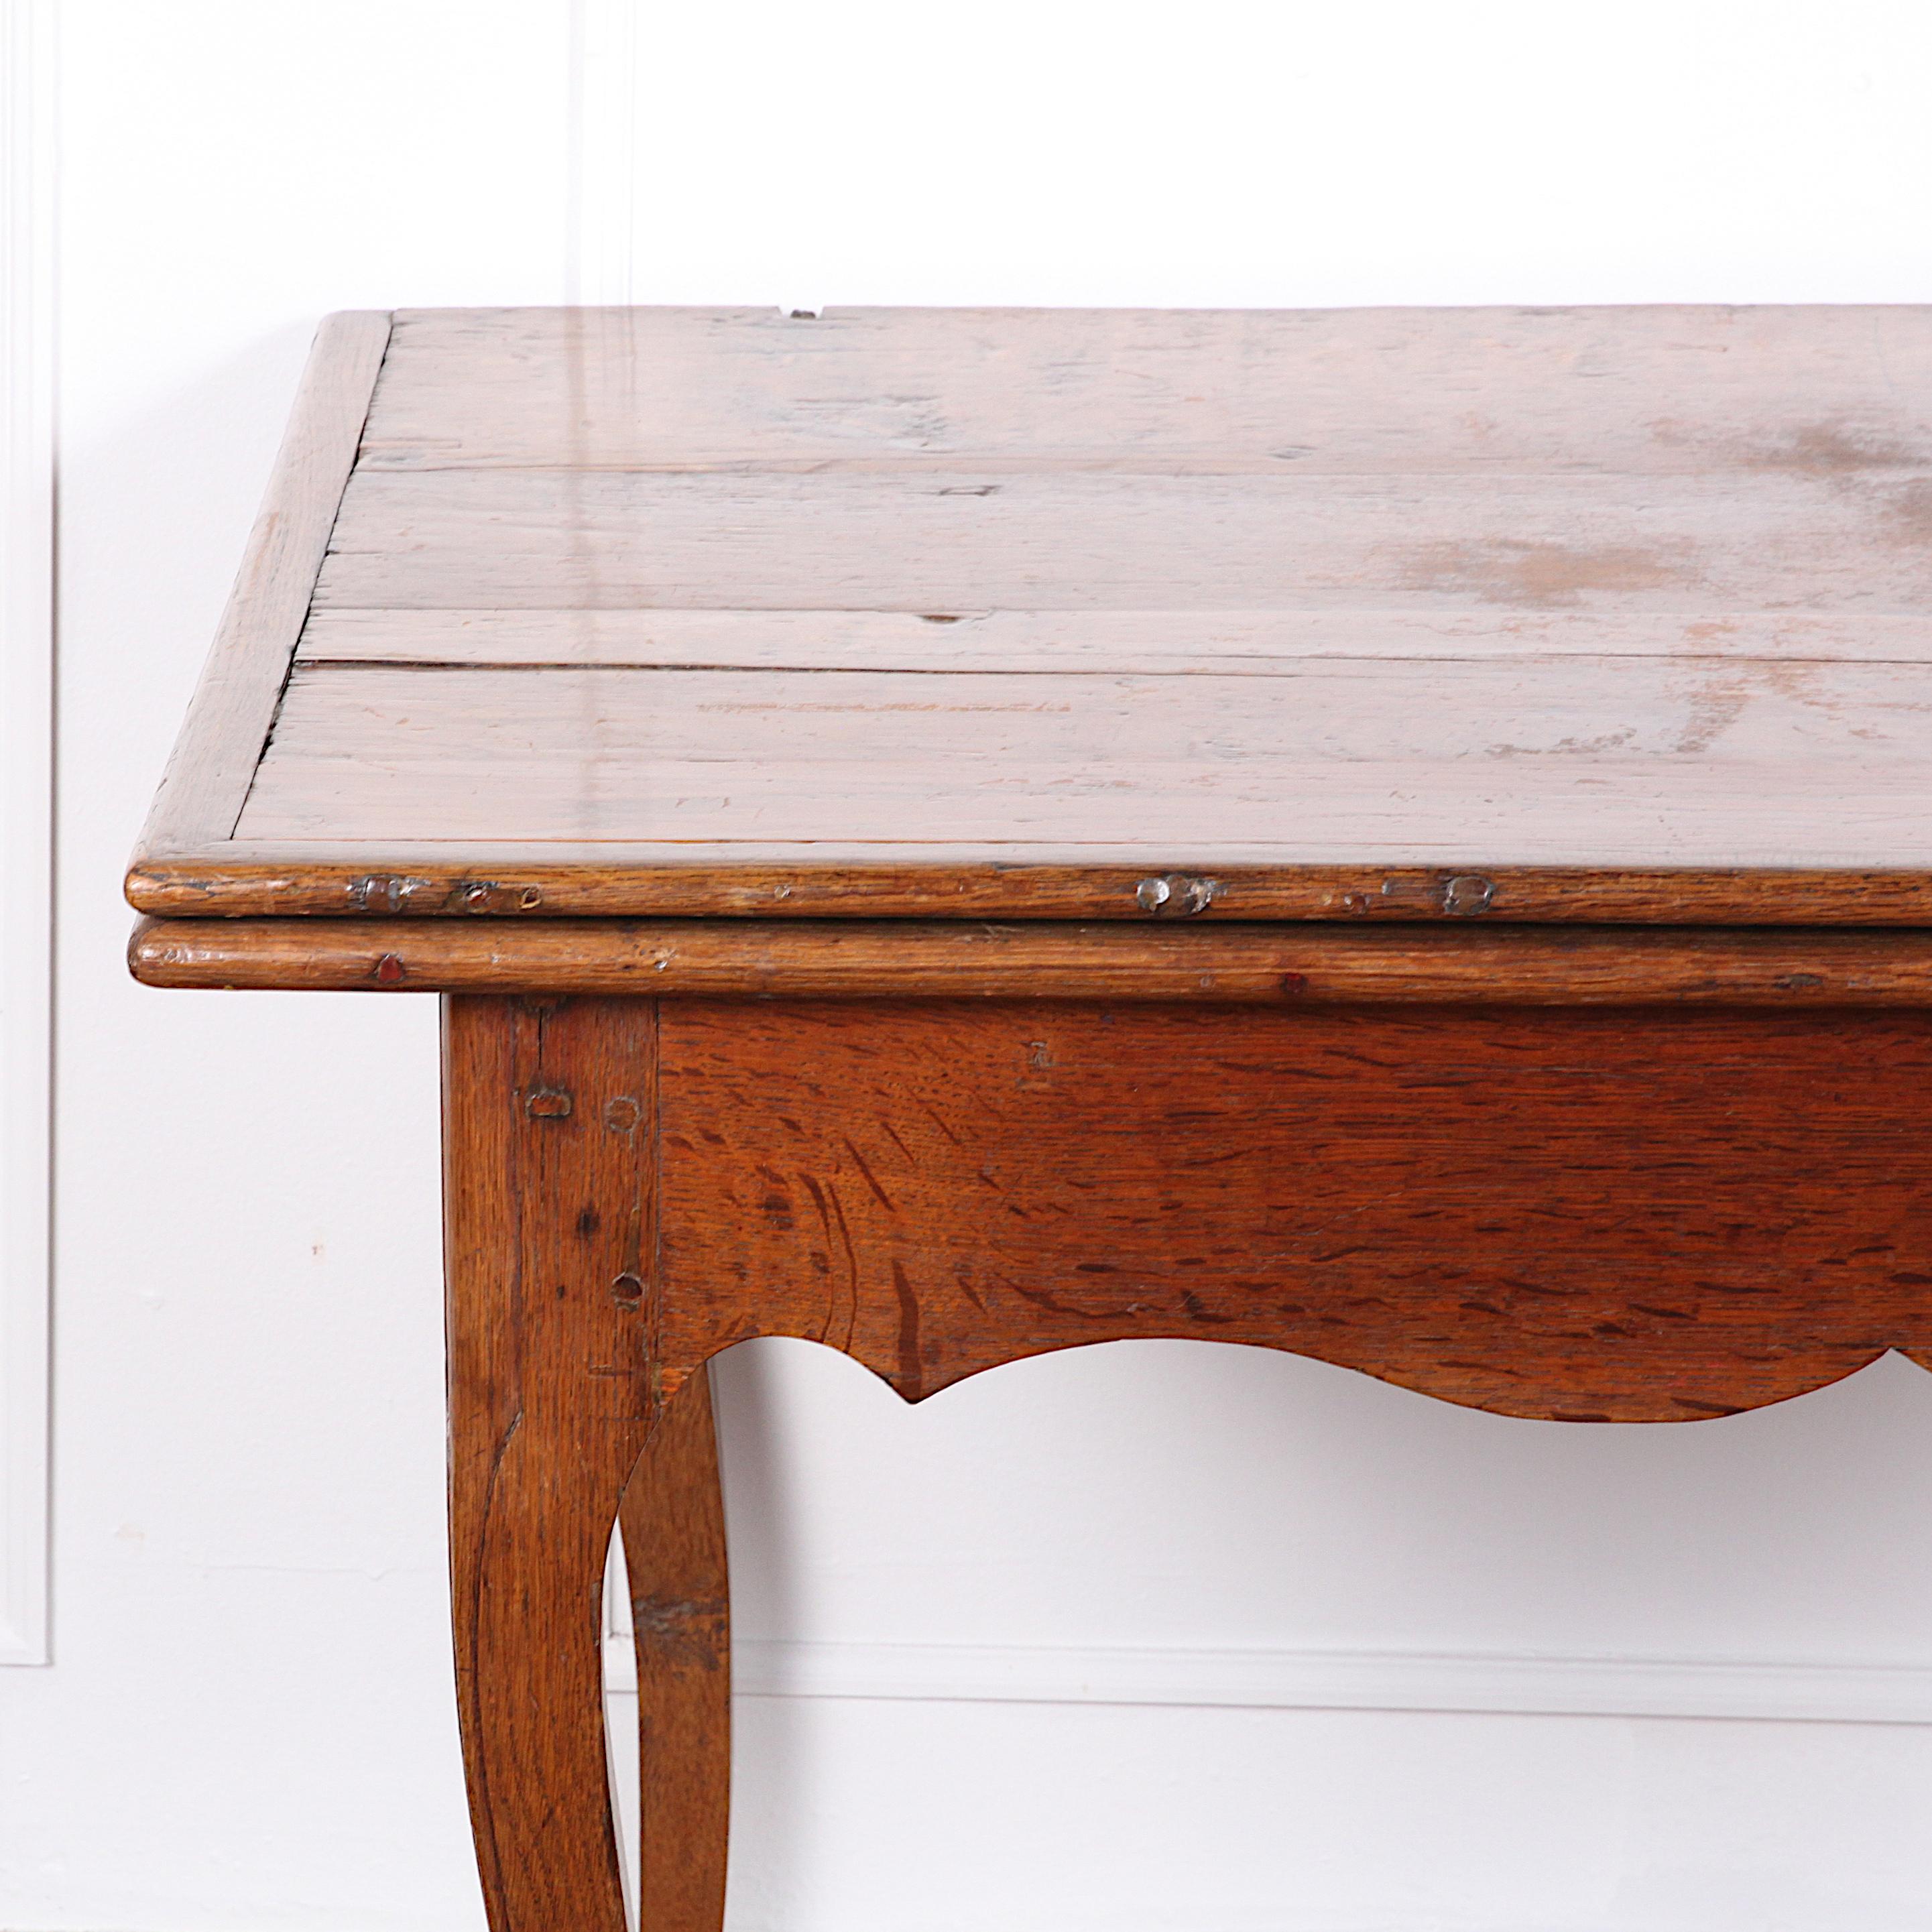 Ausziehbarer Bauernhoftisch aus französischer Eiche des 19. Jahrhunderts mit aufklappbarer Platte und ausziehbarem Untergestell, das die Platte im aufgeklappten Zustand stützt. Ein ungewöhnliches Design und geeignet für kleine Räume, in denen